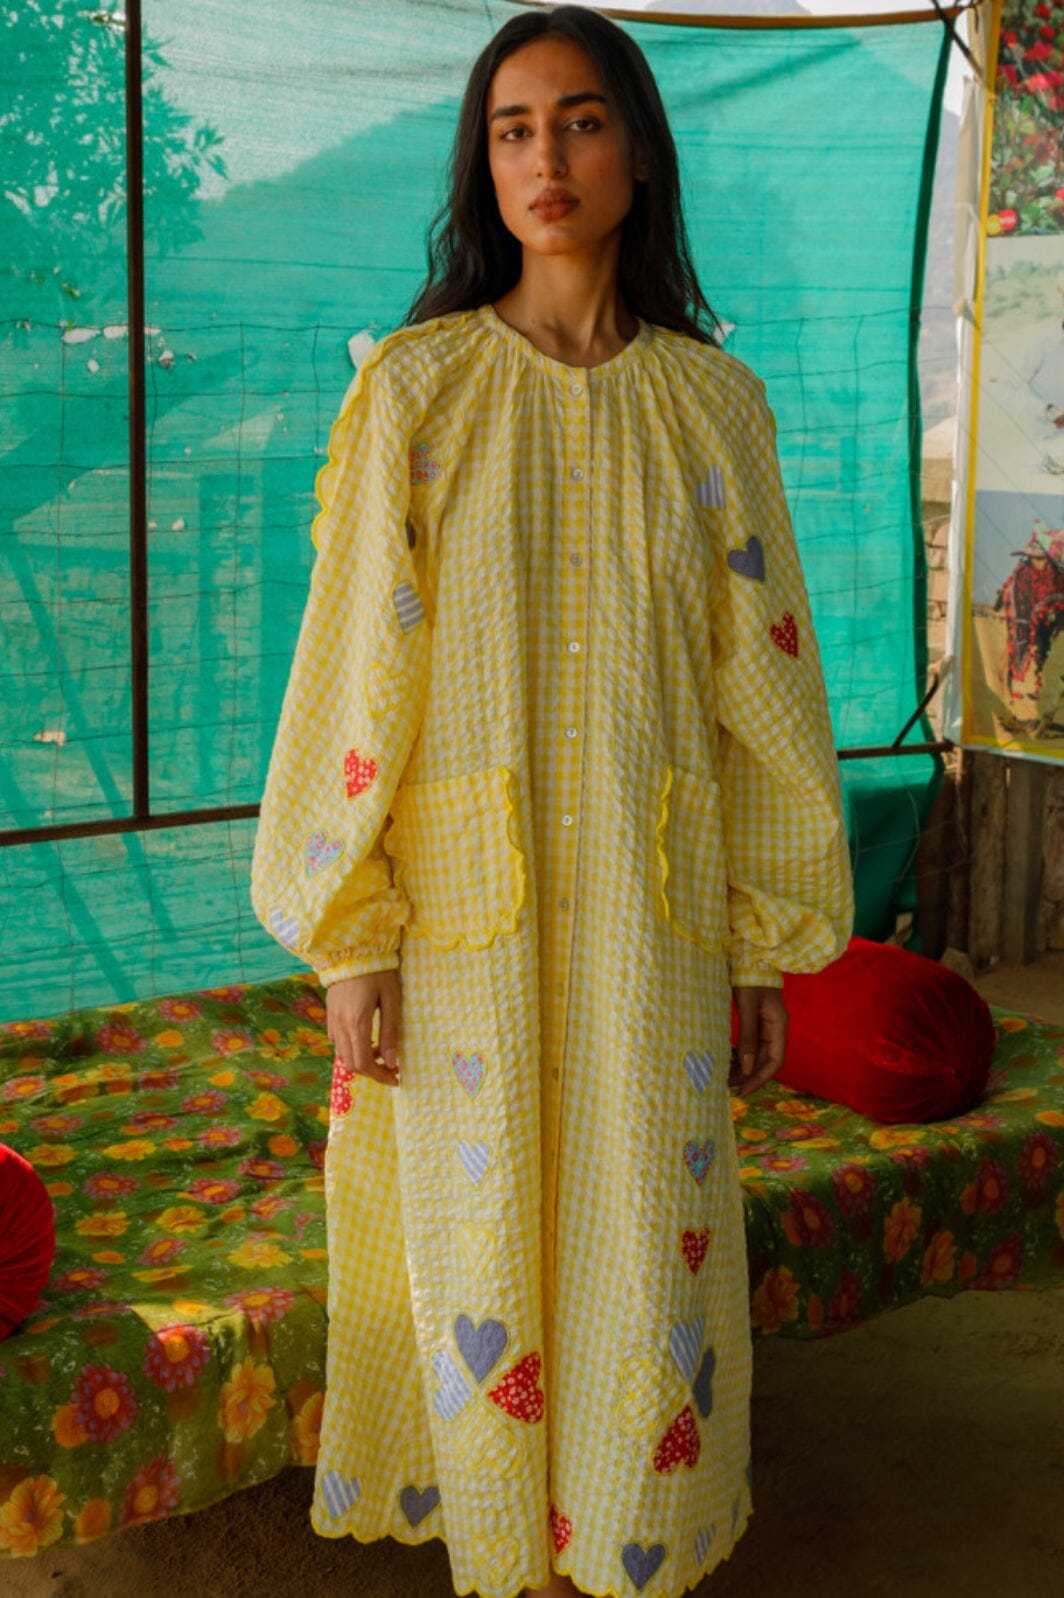 Sissel Edelbo - Kamal Organic Cotton Dress SE 1233 - Yellow Checks Kjoler 